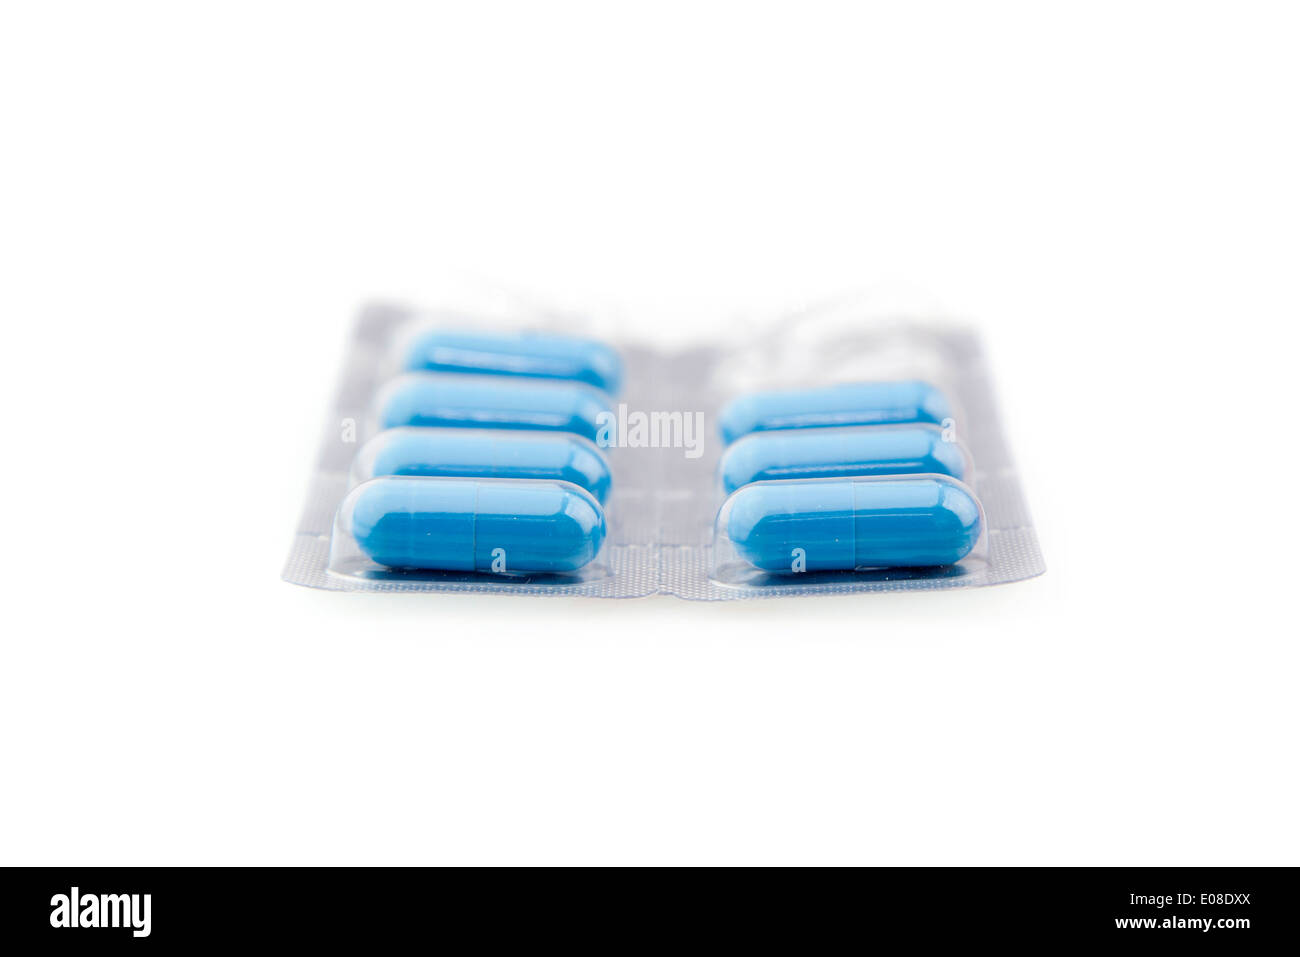 Plaquette de pilules bleus isolé sur fond blanc Banque D'Images